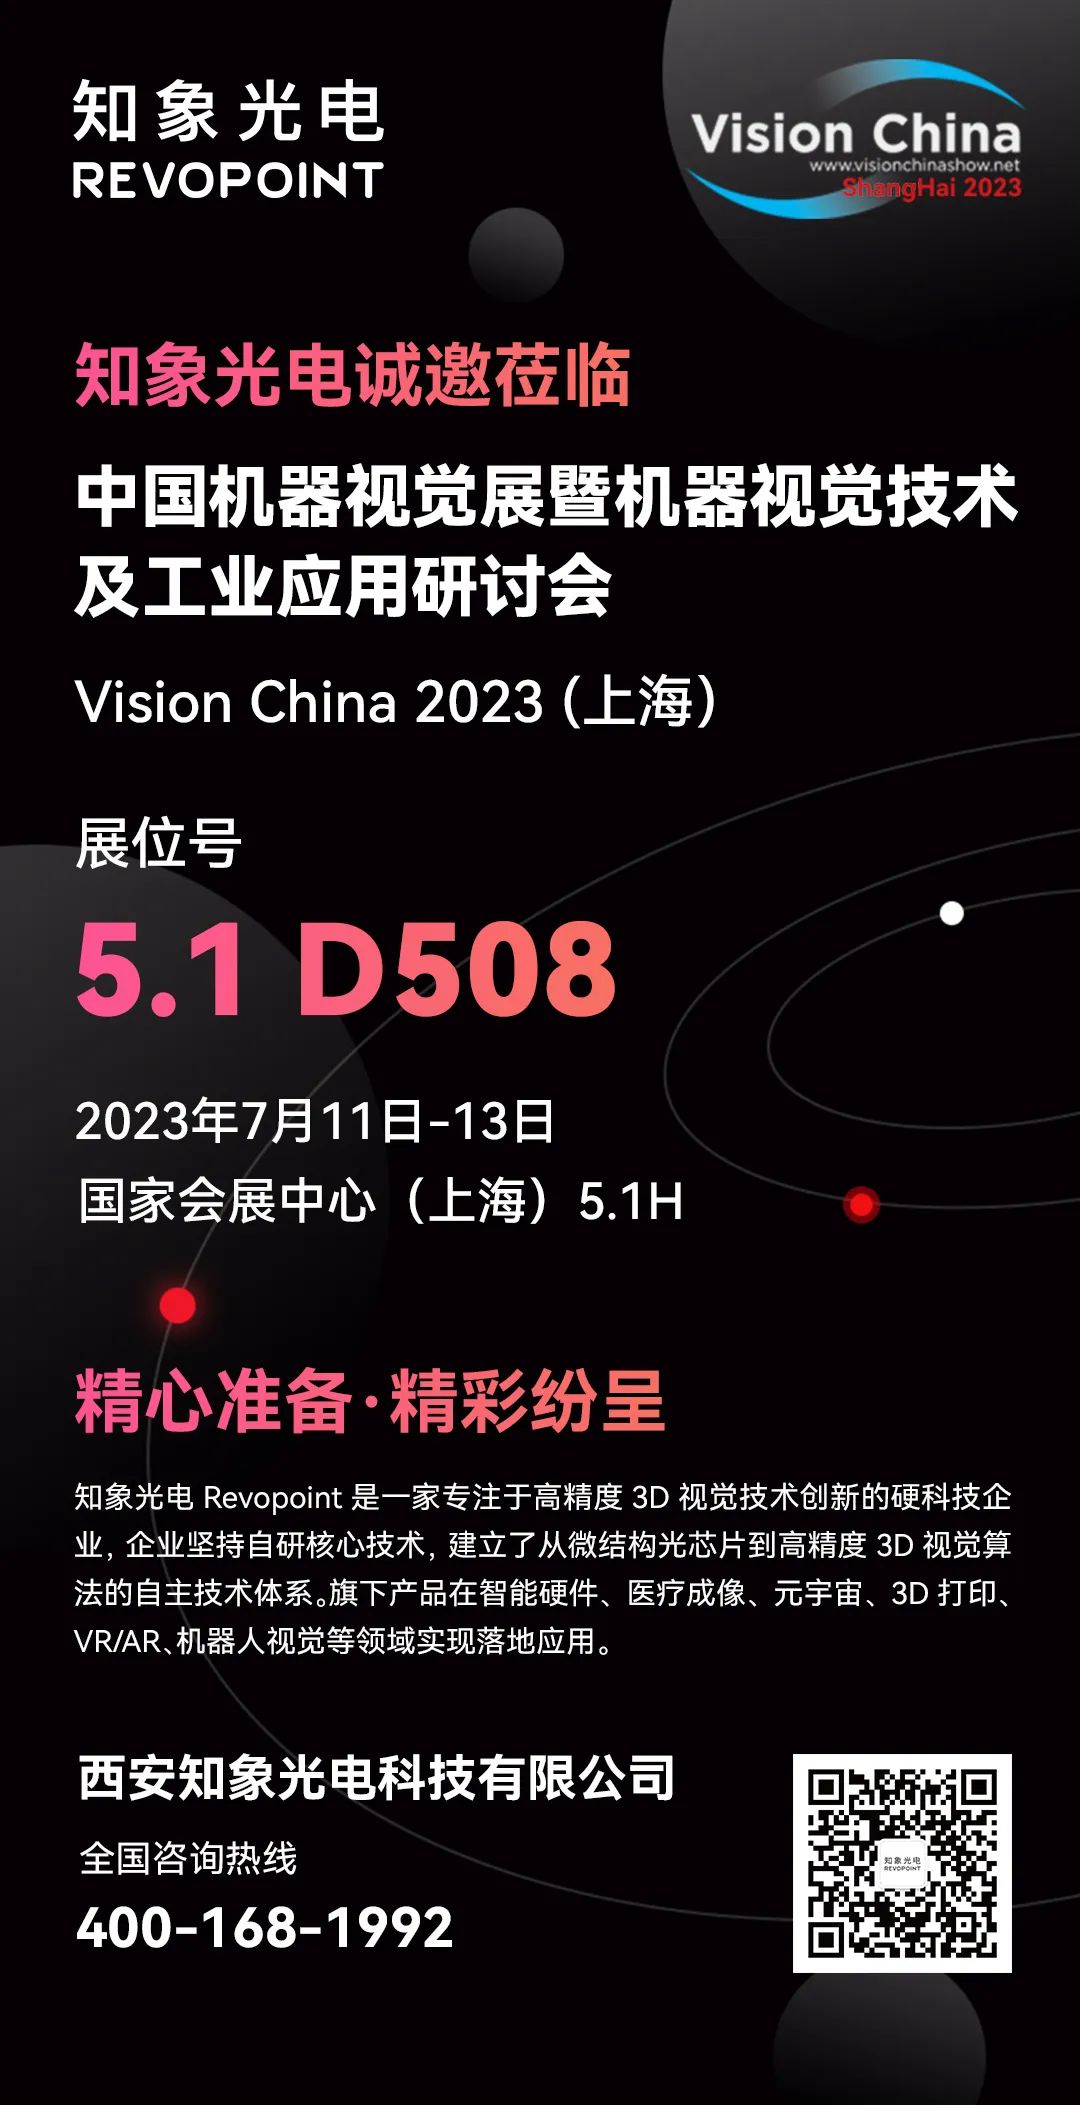 中国机器视觉展知象光电